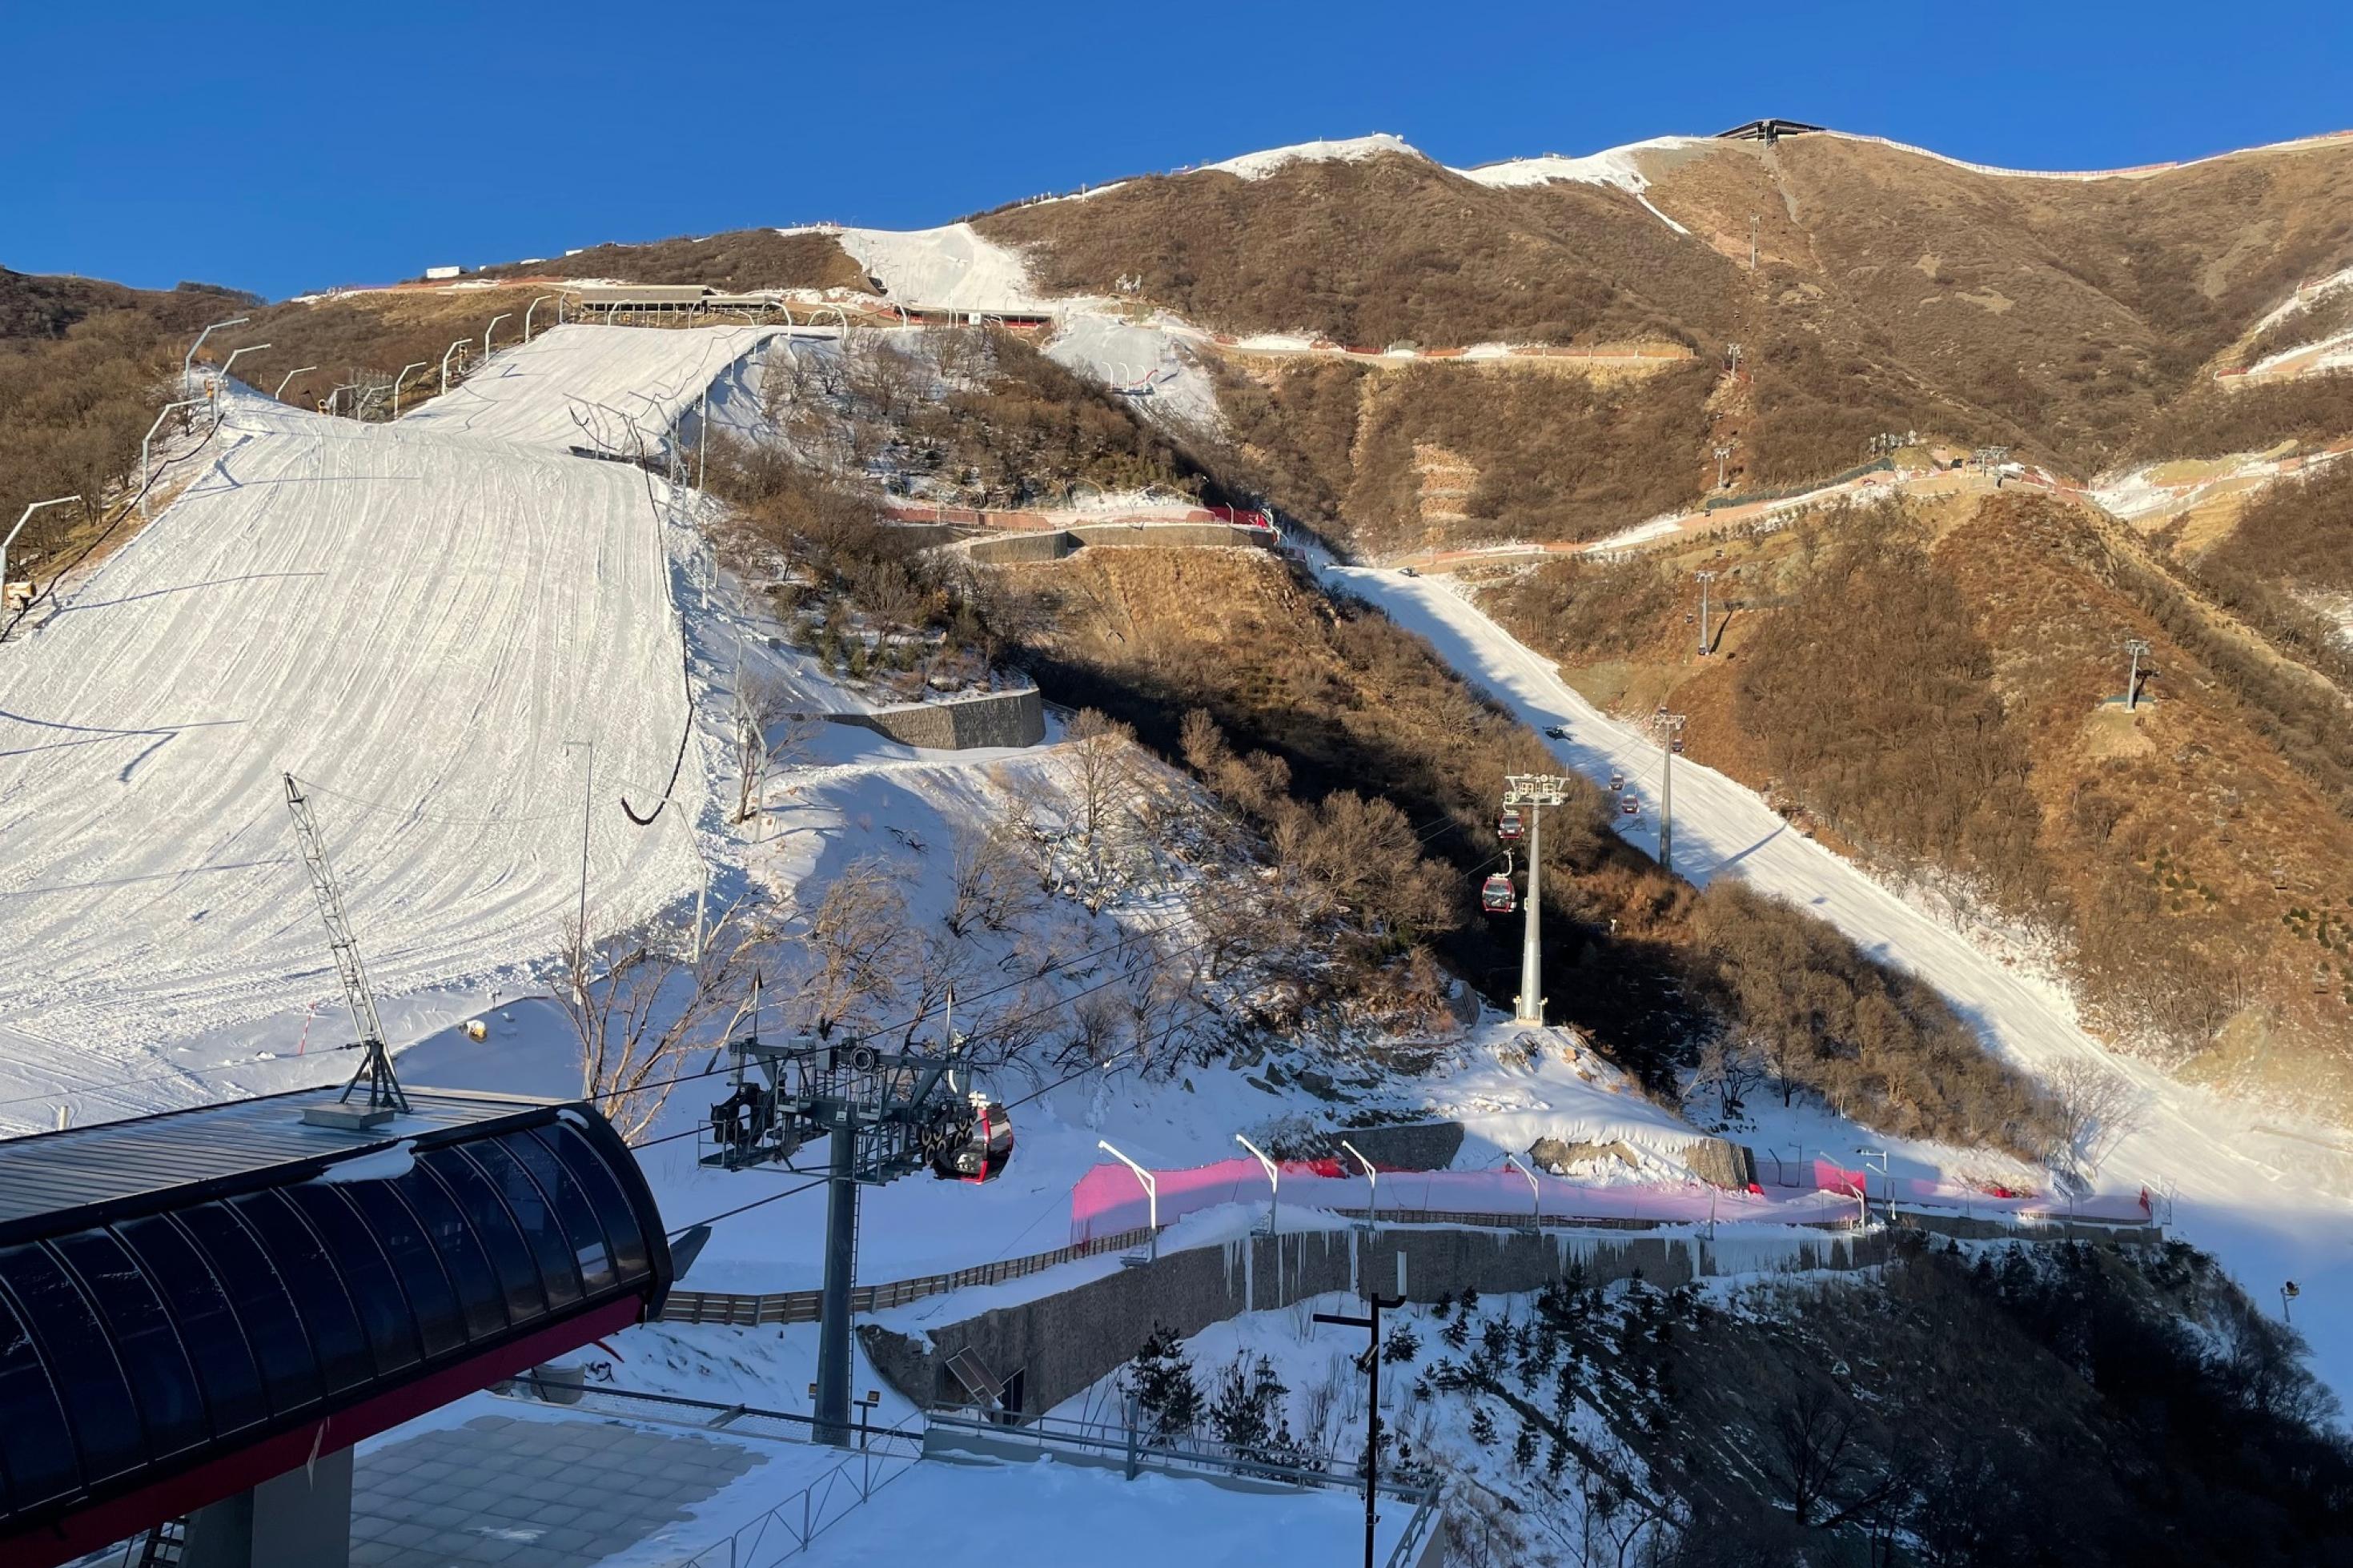 Panoramablick auf einen Skilift bei Peking. Wegen der Trockenheit müssen die Pisten für die Olympischen Winterspiele mit Schneekanonen beschneit werden. Das Terrain außerhalb der Pisten ist braun.